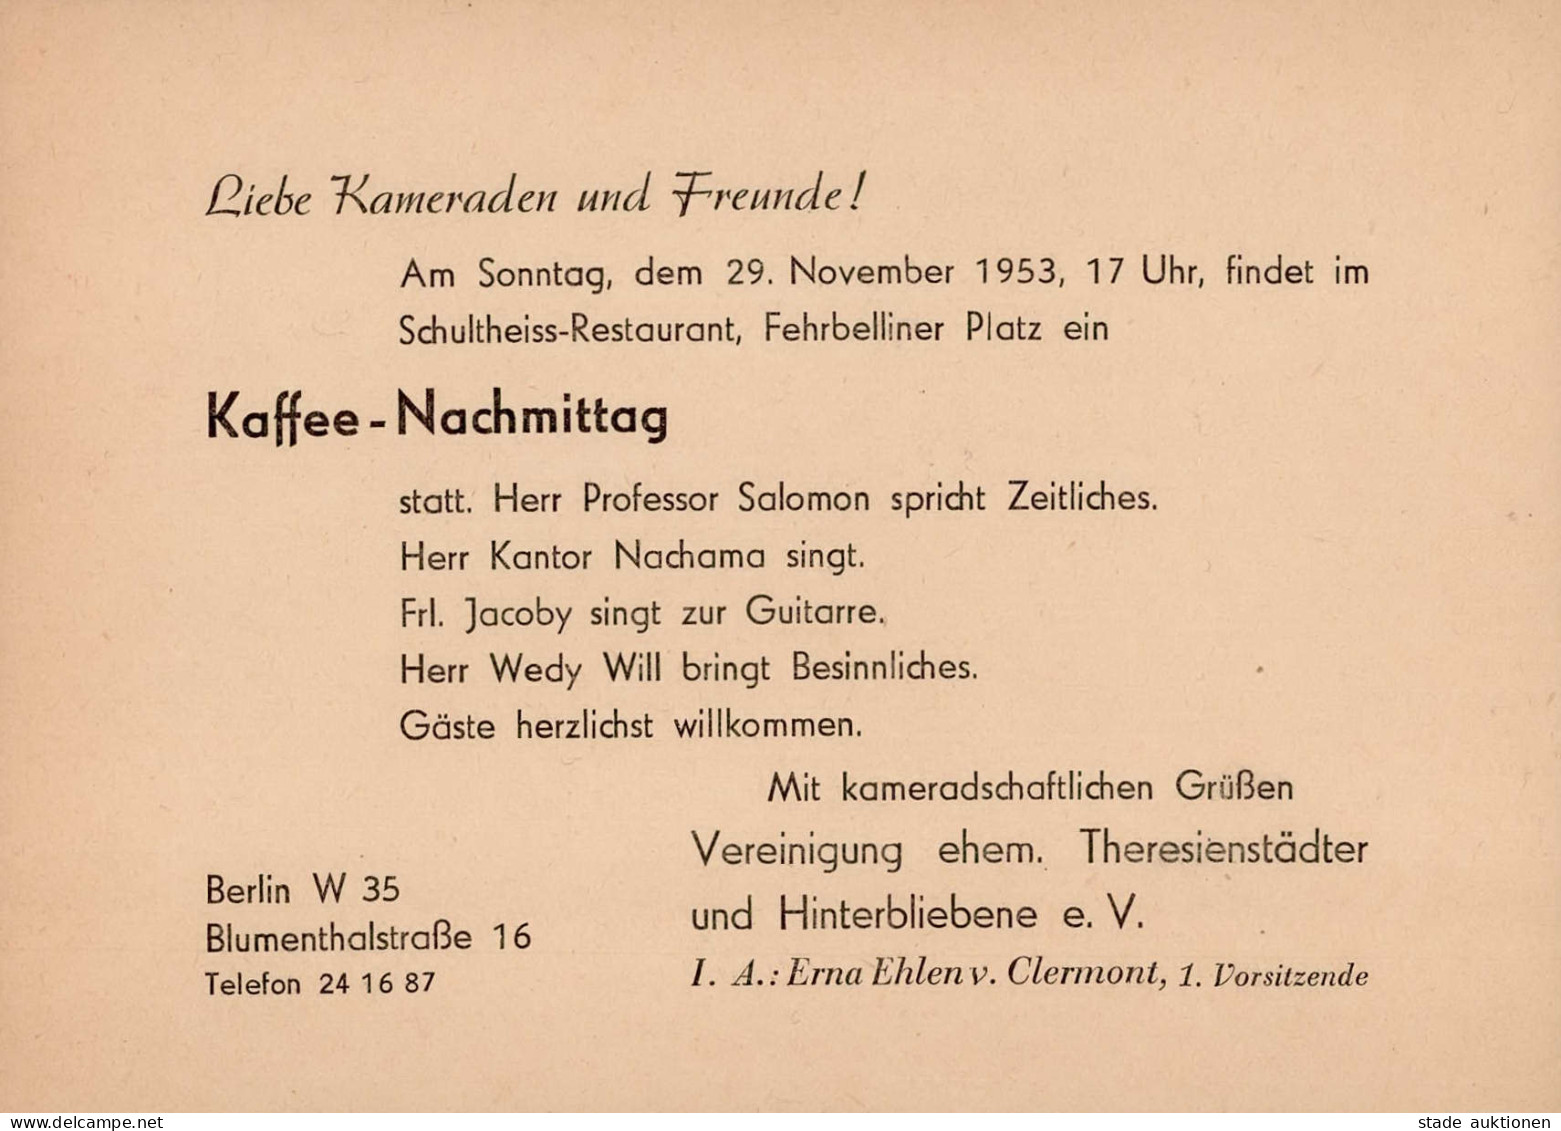 Judaika Berlin Einladungskarte 1953 Von Der Vereinigung Ehem. Theresienstädter Und Hinterbliebene E.V. Judaisme - Jewish